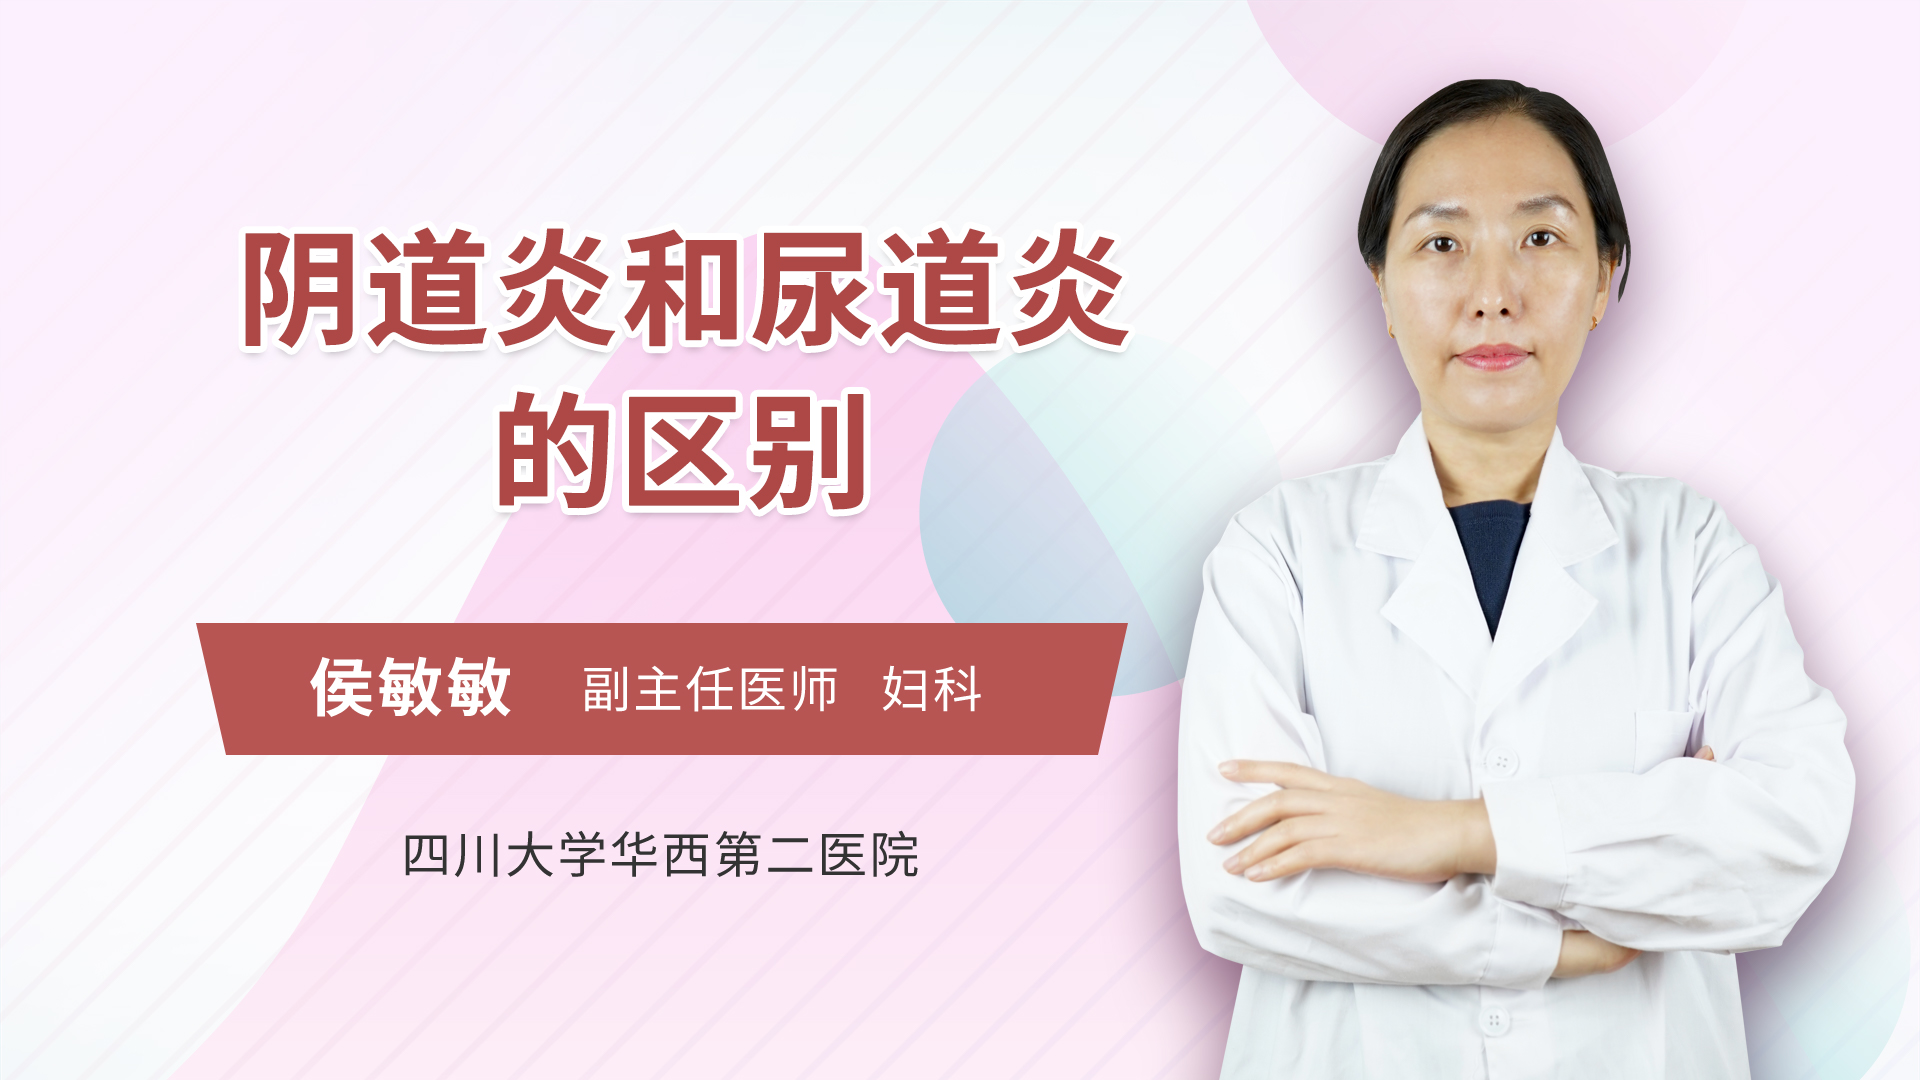 诸暨市第六人民医院与浙江省人民医院联合开设宫颈阴道专科啦！